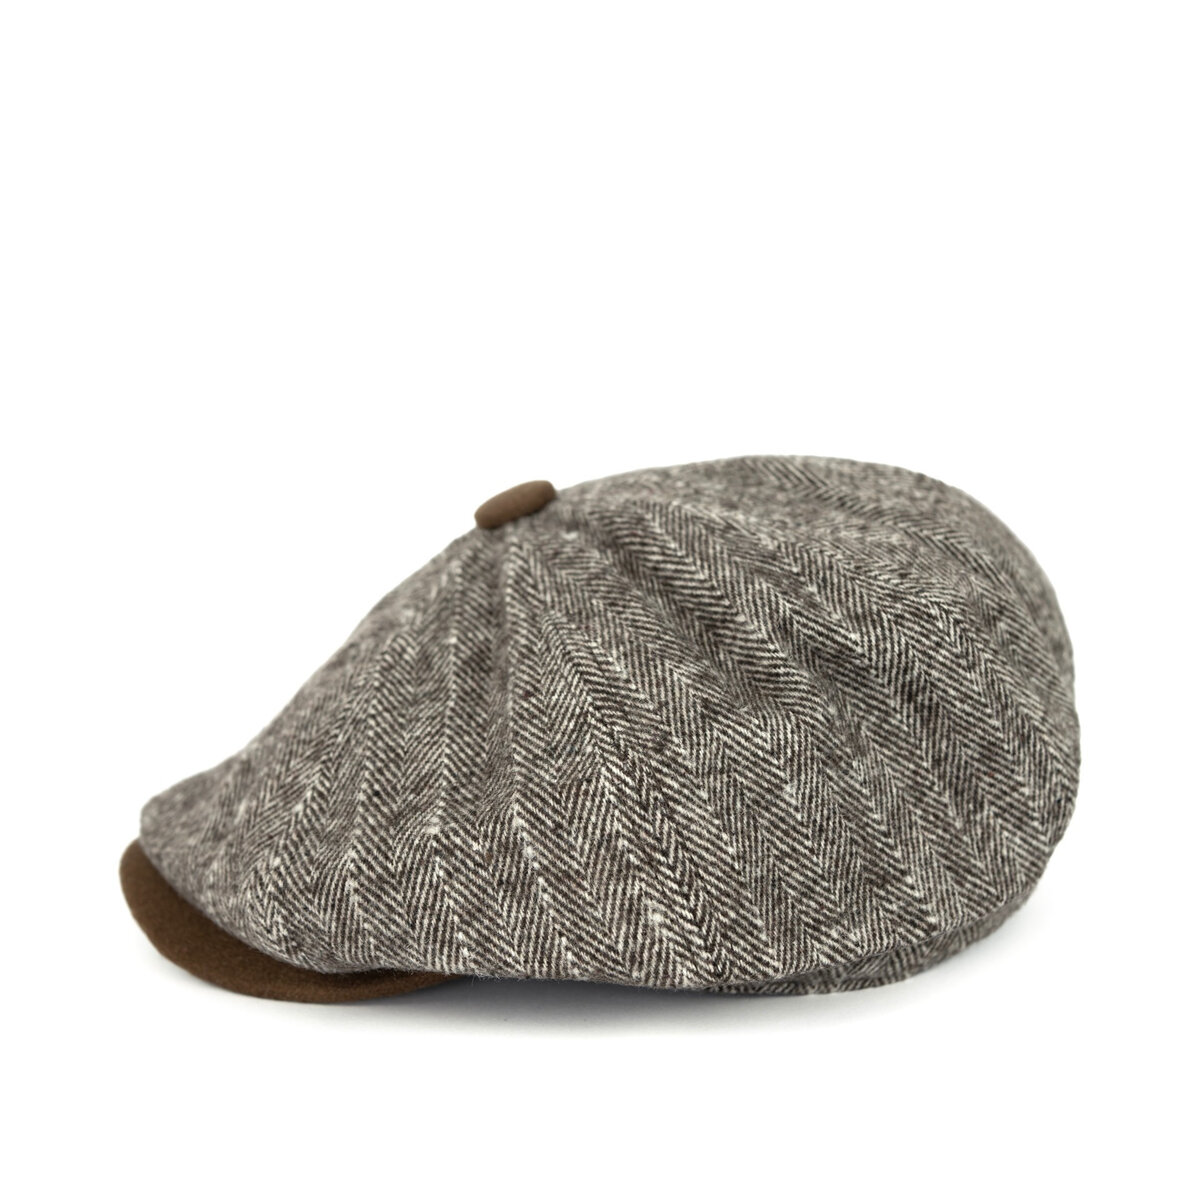 Stylová pánská zimní čepice - Hnědá elegance, one size i10_P67896_2:416_